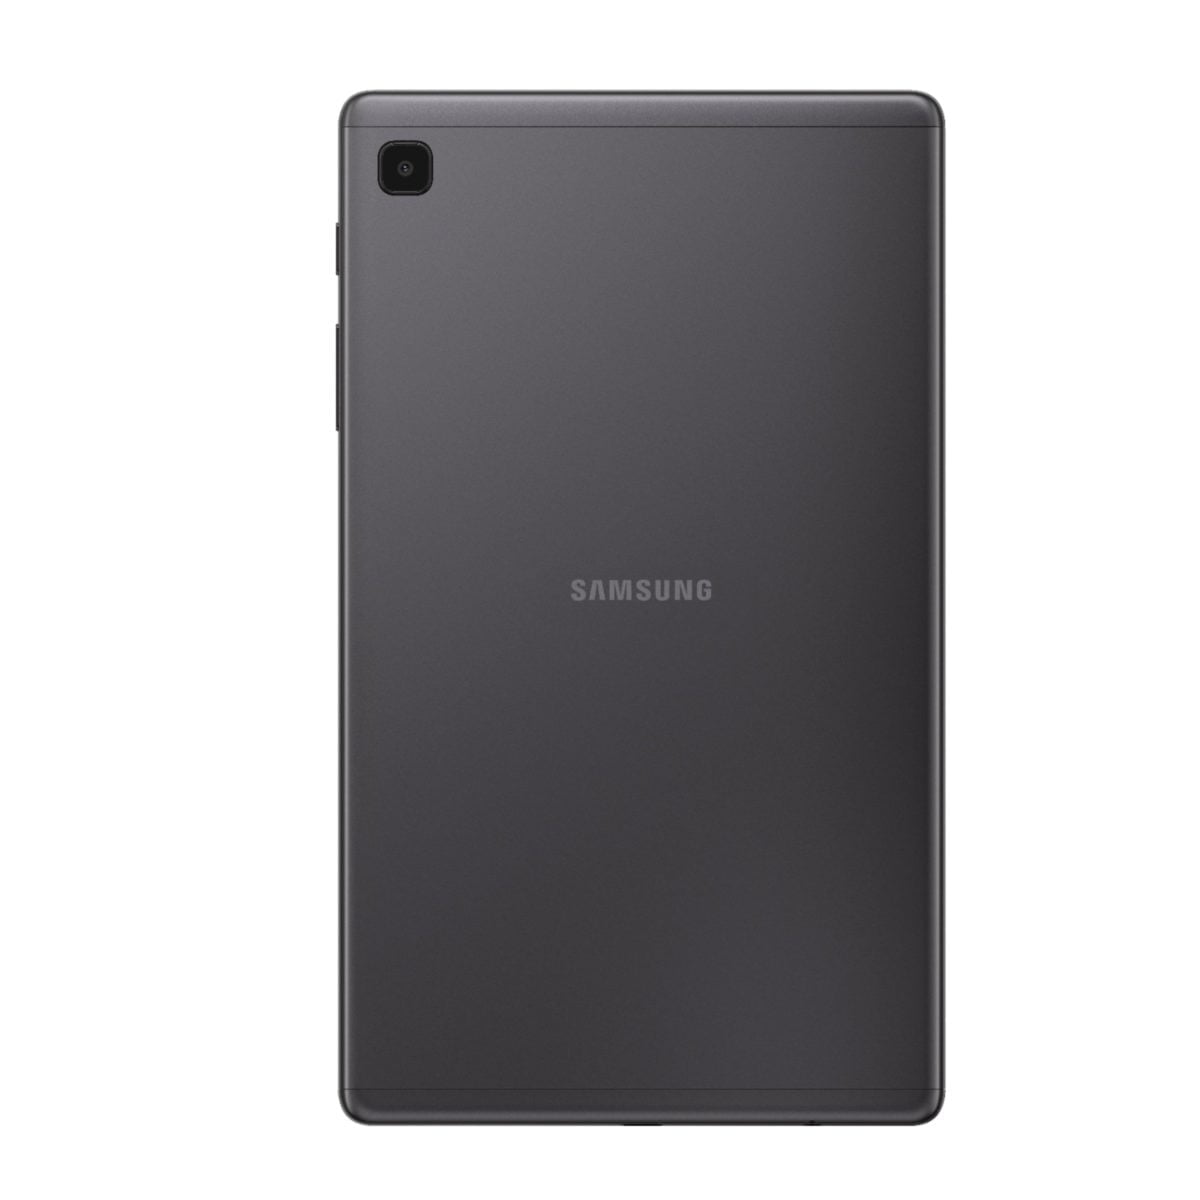 6464584Cv11D Scaled سامسونج &Lt;H1&Gt;سامسونج جالاكسي تاب A7 لايت 32 جيجا بايت - رمادي غامق&Lt;/H1&Gt;
تعرف على الجهاز الذي ستحبه عائلتك بأكملها: Samsung Galaxy Tab A7 Lite ، الجهاز اللوحي المصنوع لمشاركته. بفضل شاشته المدمجة مقاس 8.7 بوصات ، يعد Galaxy Tab A7 Lite بحجم مثالي للترفيه أثناء التنقل. تم تصميم إطاره المعدني القوي ليتم إحضاره من غرفة المعيشة إلى عطلتك الشاطئية ، أو أينما تريد أن تأخذه. يأتي Galaxy Tab A7 Lite مزودا بإمكانية الوصول إلى ساعات من Youtube Premium و Samsung Tv الخالي من الإعلانات دون أي رسوم إضافية حتى تتمكن من إبقاء العائلة سعيدة دون انقطاع مزعج. بالإضافة إلى ذلك ، مع معالج قوي للبث السريع والكثير من التخزين لملفاتك المفضلة ، يبسط Galaxy Tab A7 Lite احتياجات الترفيه للجميع تحت سقفك. سامسونج جالاكسي تاب سامسونج جالاكسي تاب A7 لايت 32 جيجا بايت واي فاي - رمادي غامق